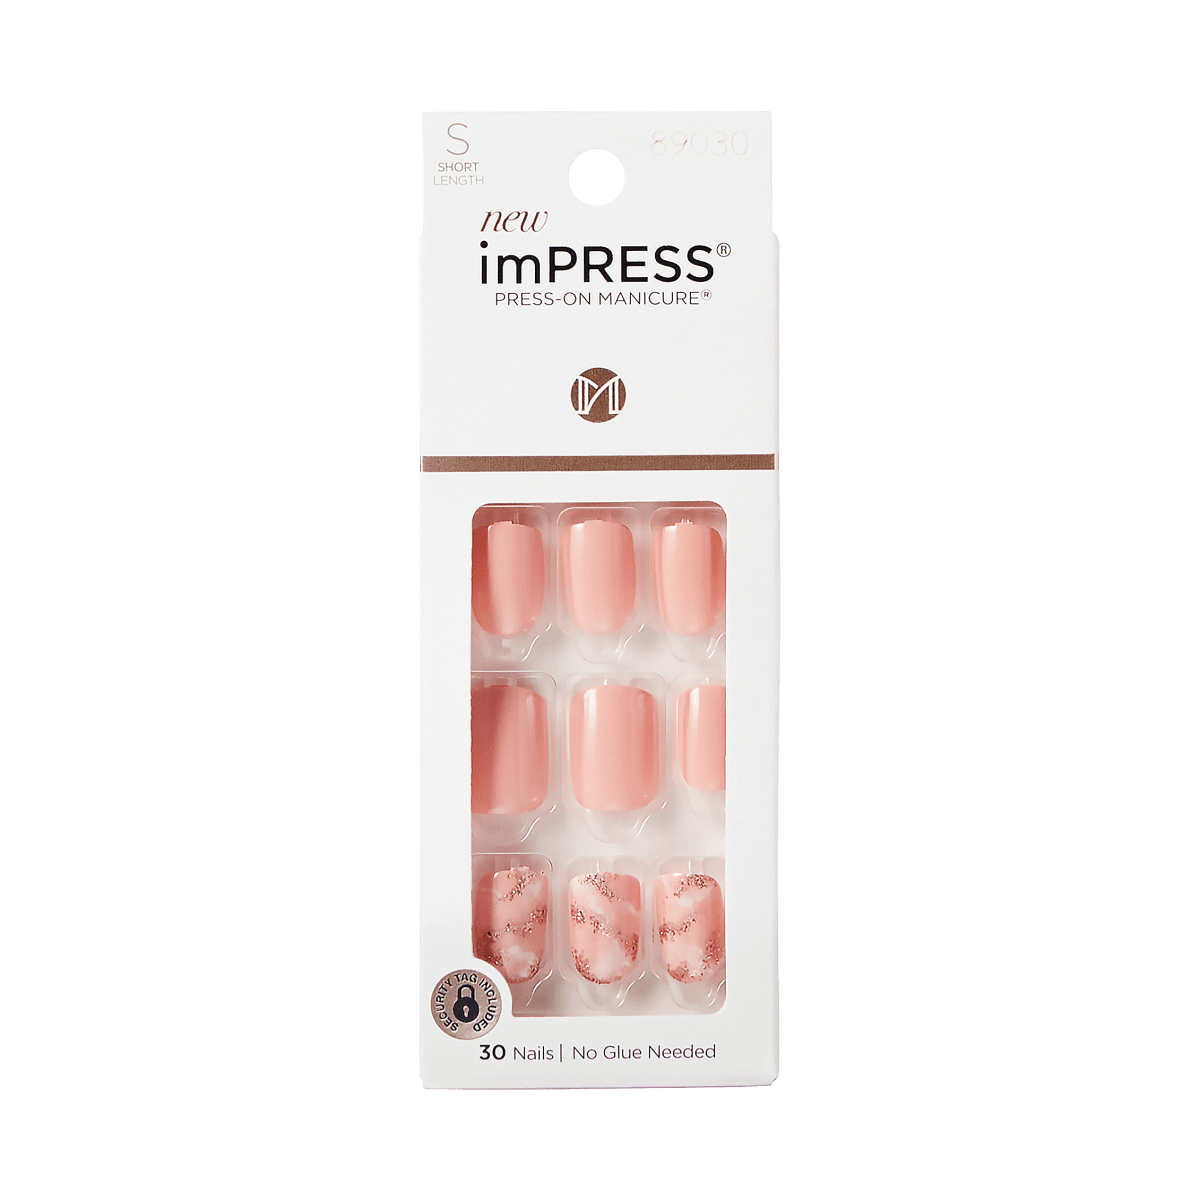 imPRESS Press-On Manicure - Kingdom